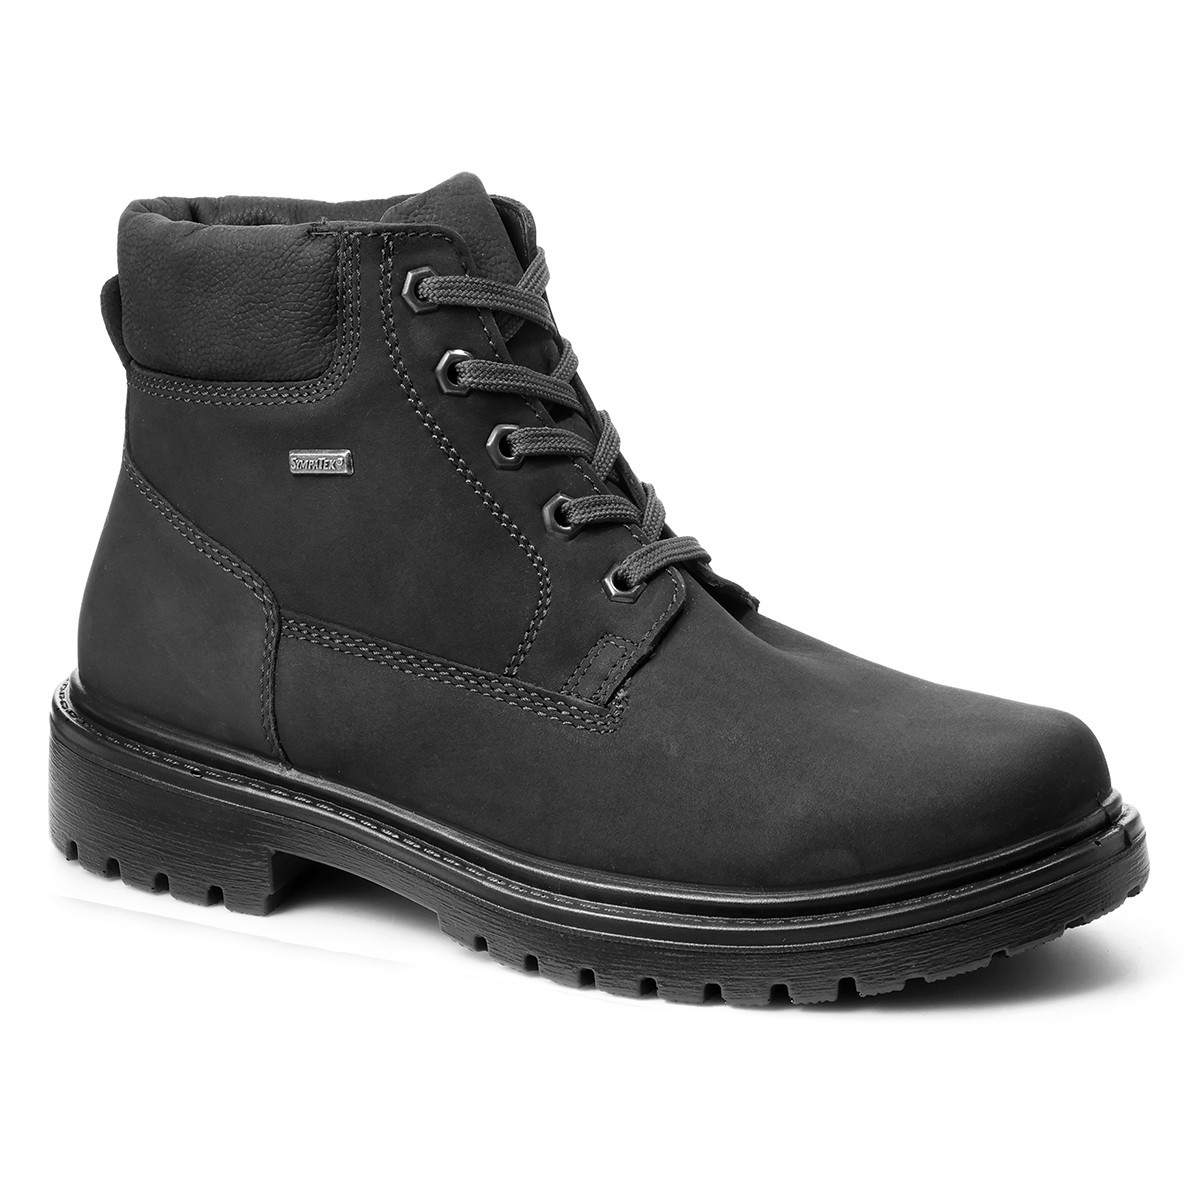 Мужские ботинки на шнуровке Alpina, Jomos, черные